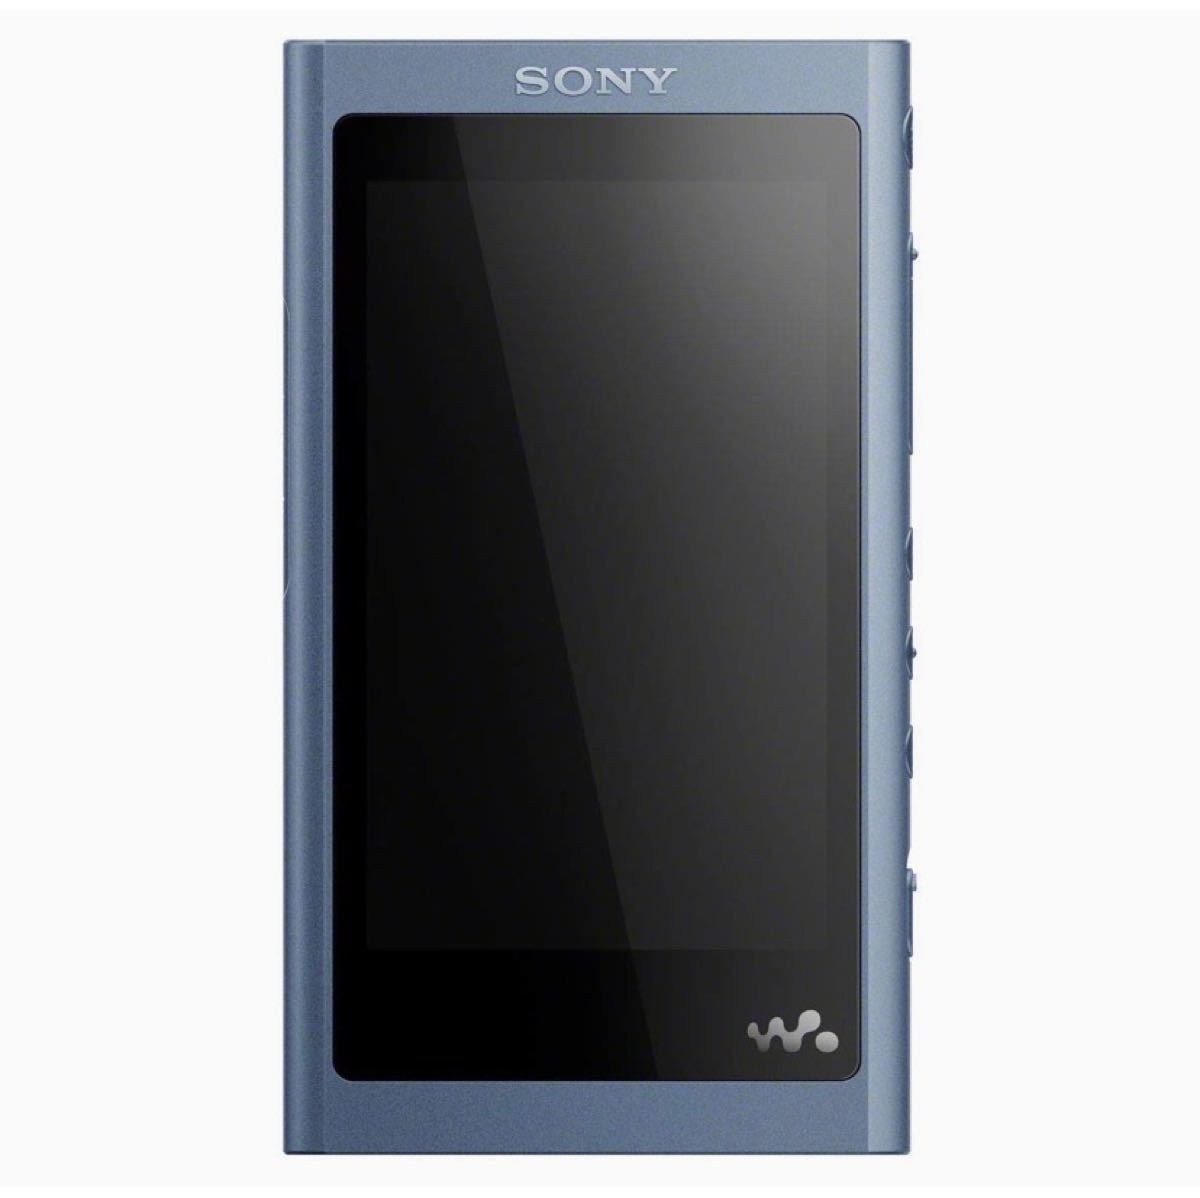 ソニー ウォークマンAシリーズ 16GBムーンリットブルー NW-A55HN L 